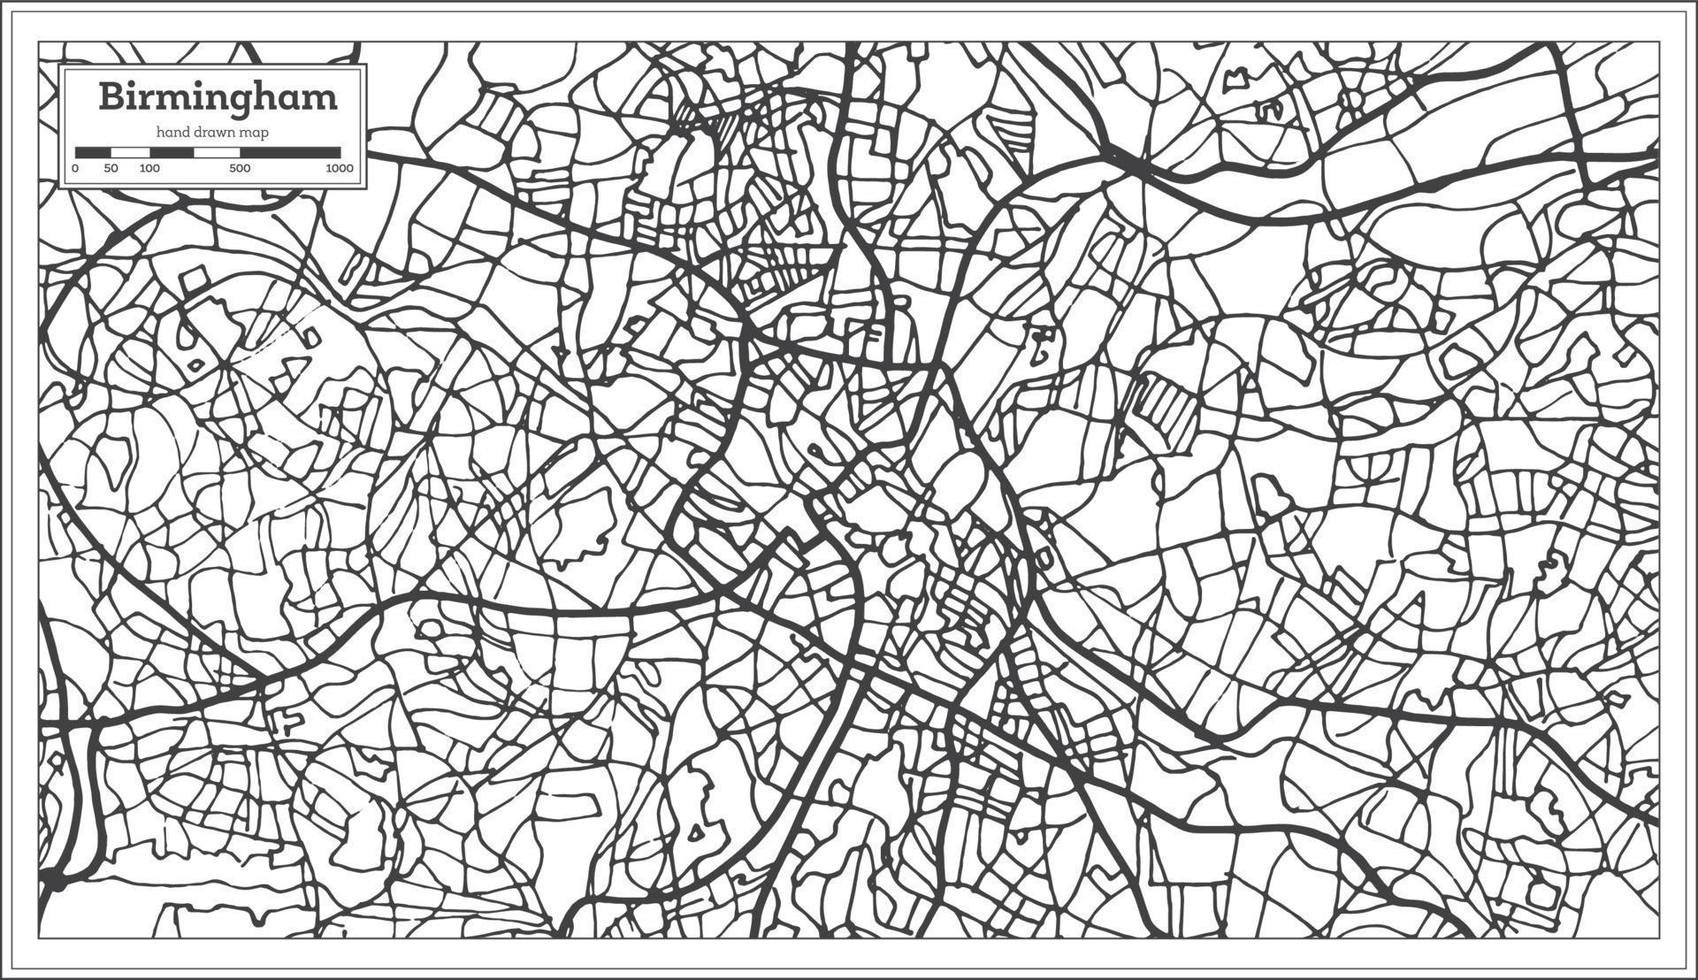 plan de la ville britannique de birmingham dans un style rétro. carte muette. vecteur